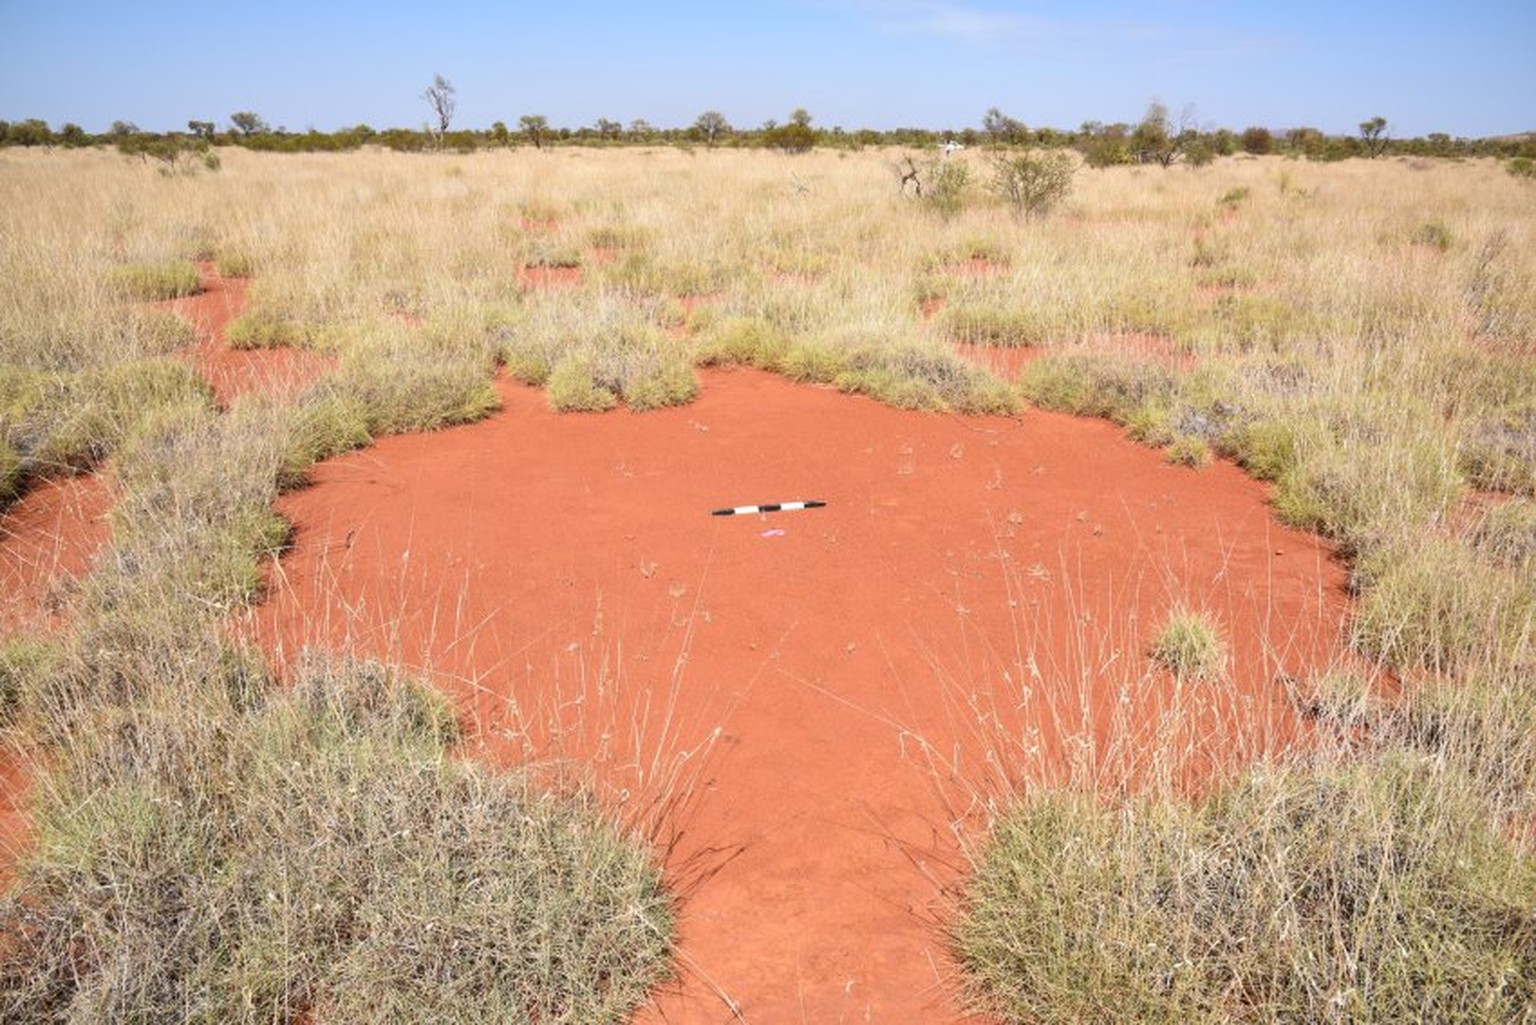 Feenkreis im Nordwesten Australiens mit Messgerät in der Mitte: Erstmals haben Forscher die Strukturen außerhalb Afrikas gefunden.